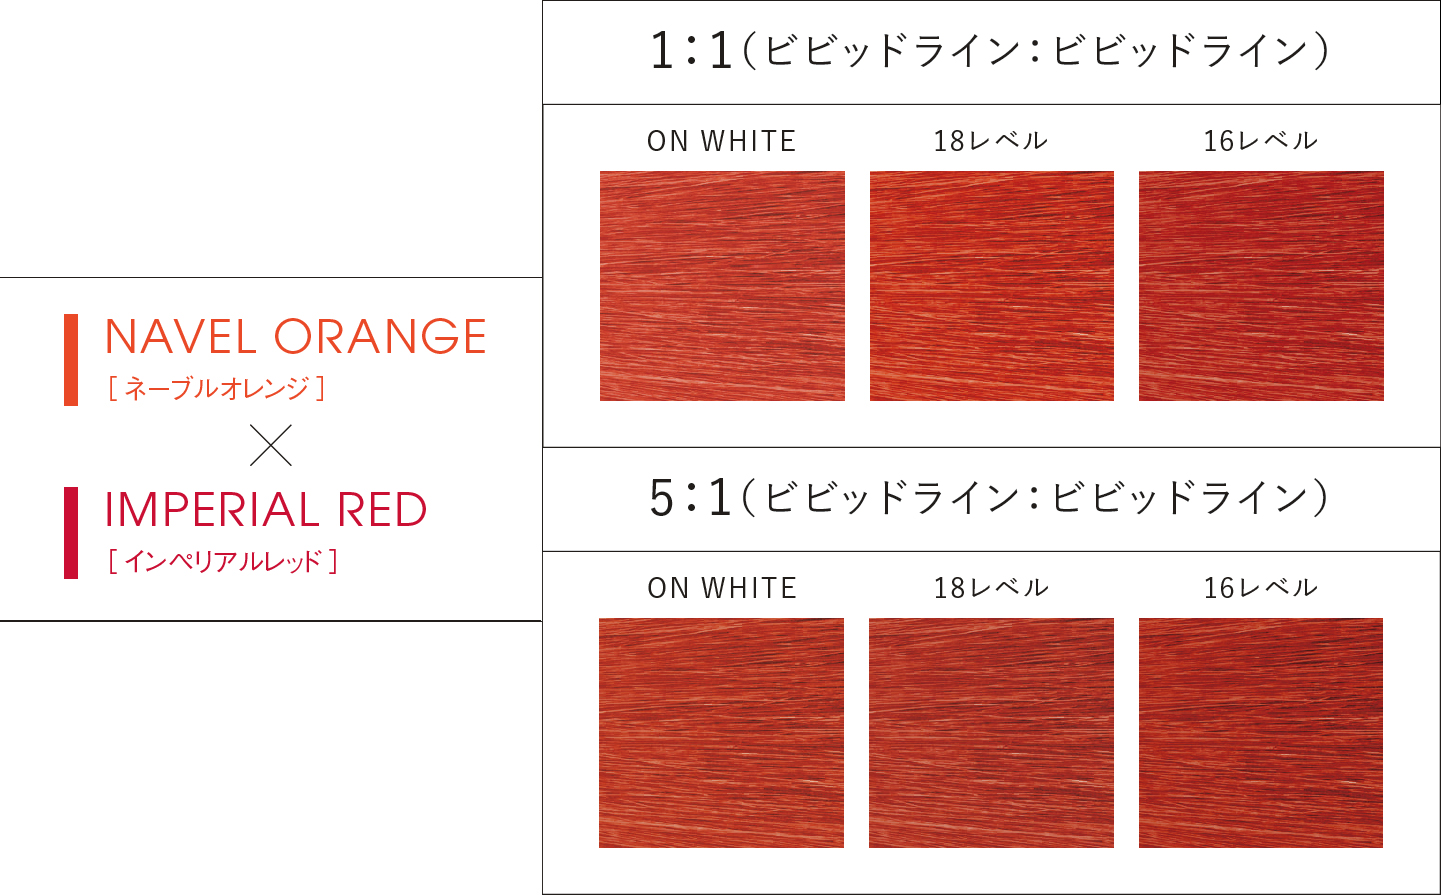 NAVEL ORANGE(ネーブルオレンジ) × IMPERIAL RED(インペリアルレッド)